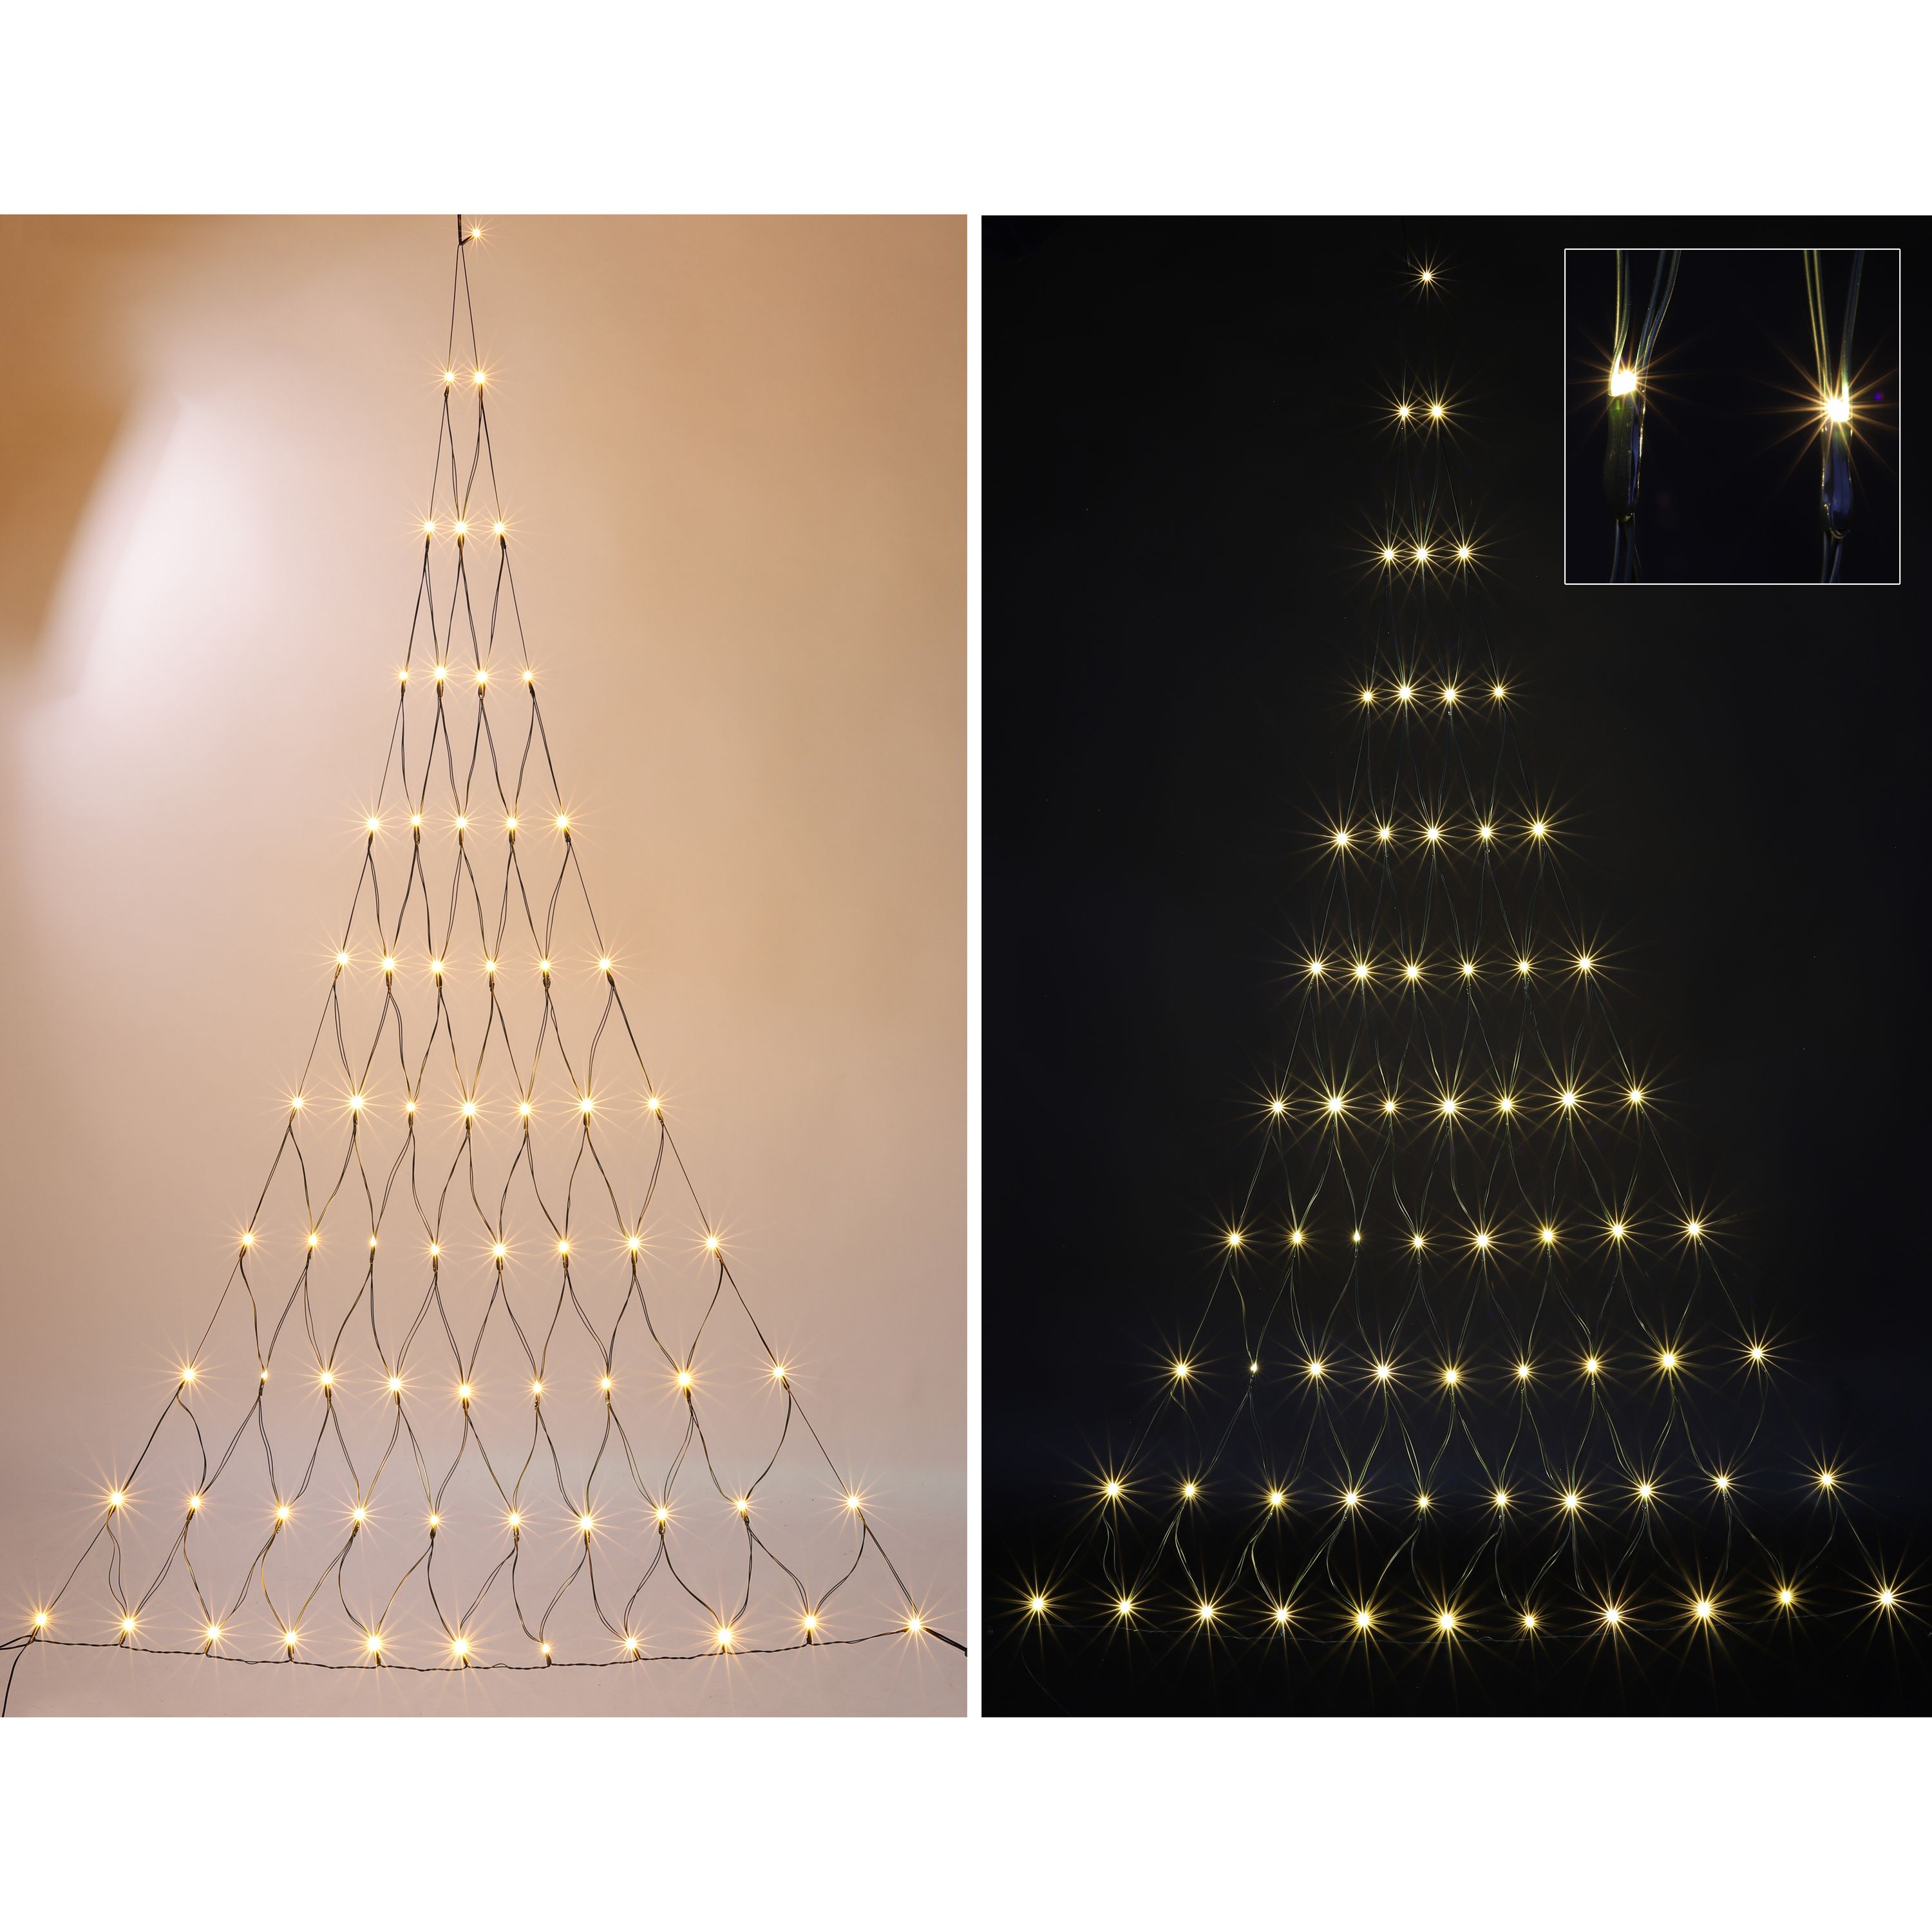 Beleuchtung, Leuchter, Lampe, Weihnachtsdekorationen, Festival